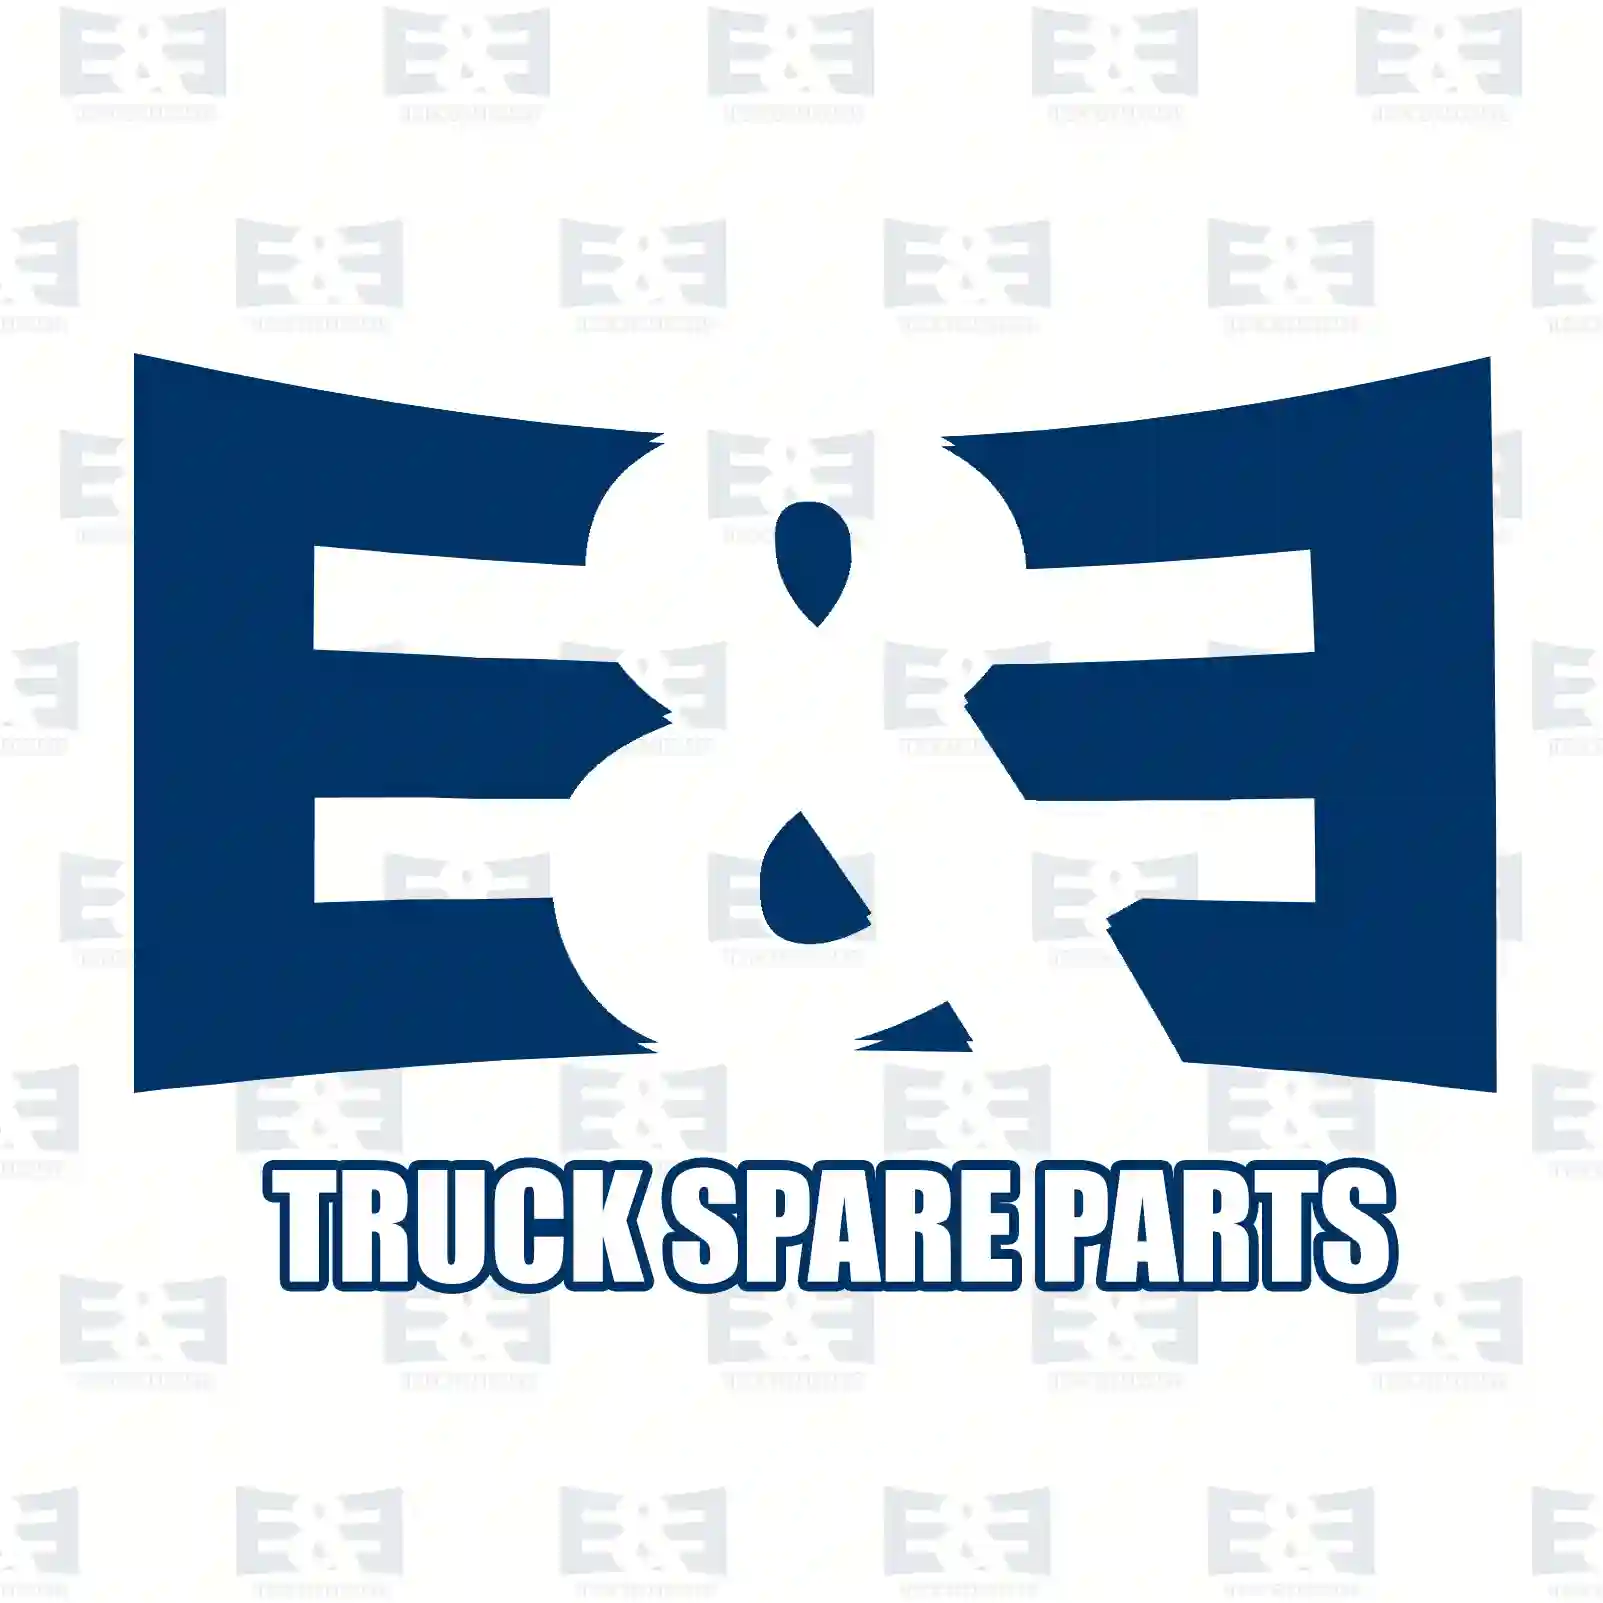 Aluminium washer, 2E2286211, 133426, 271670, 35509, , , , ||  2E2286211 E&E Truck Spare Parts | Truck Spare Parts, Auotomotive Spare Parts Aluminium washer, 2E2286211, 133426, 271670, 35509, , , , ||  2E2286211 E&E Truck Spare Parts | Truck Spare Parts, Auotomotive Spare Parts